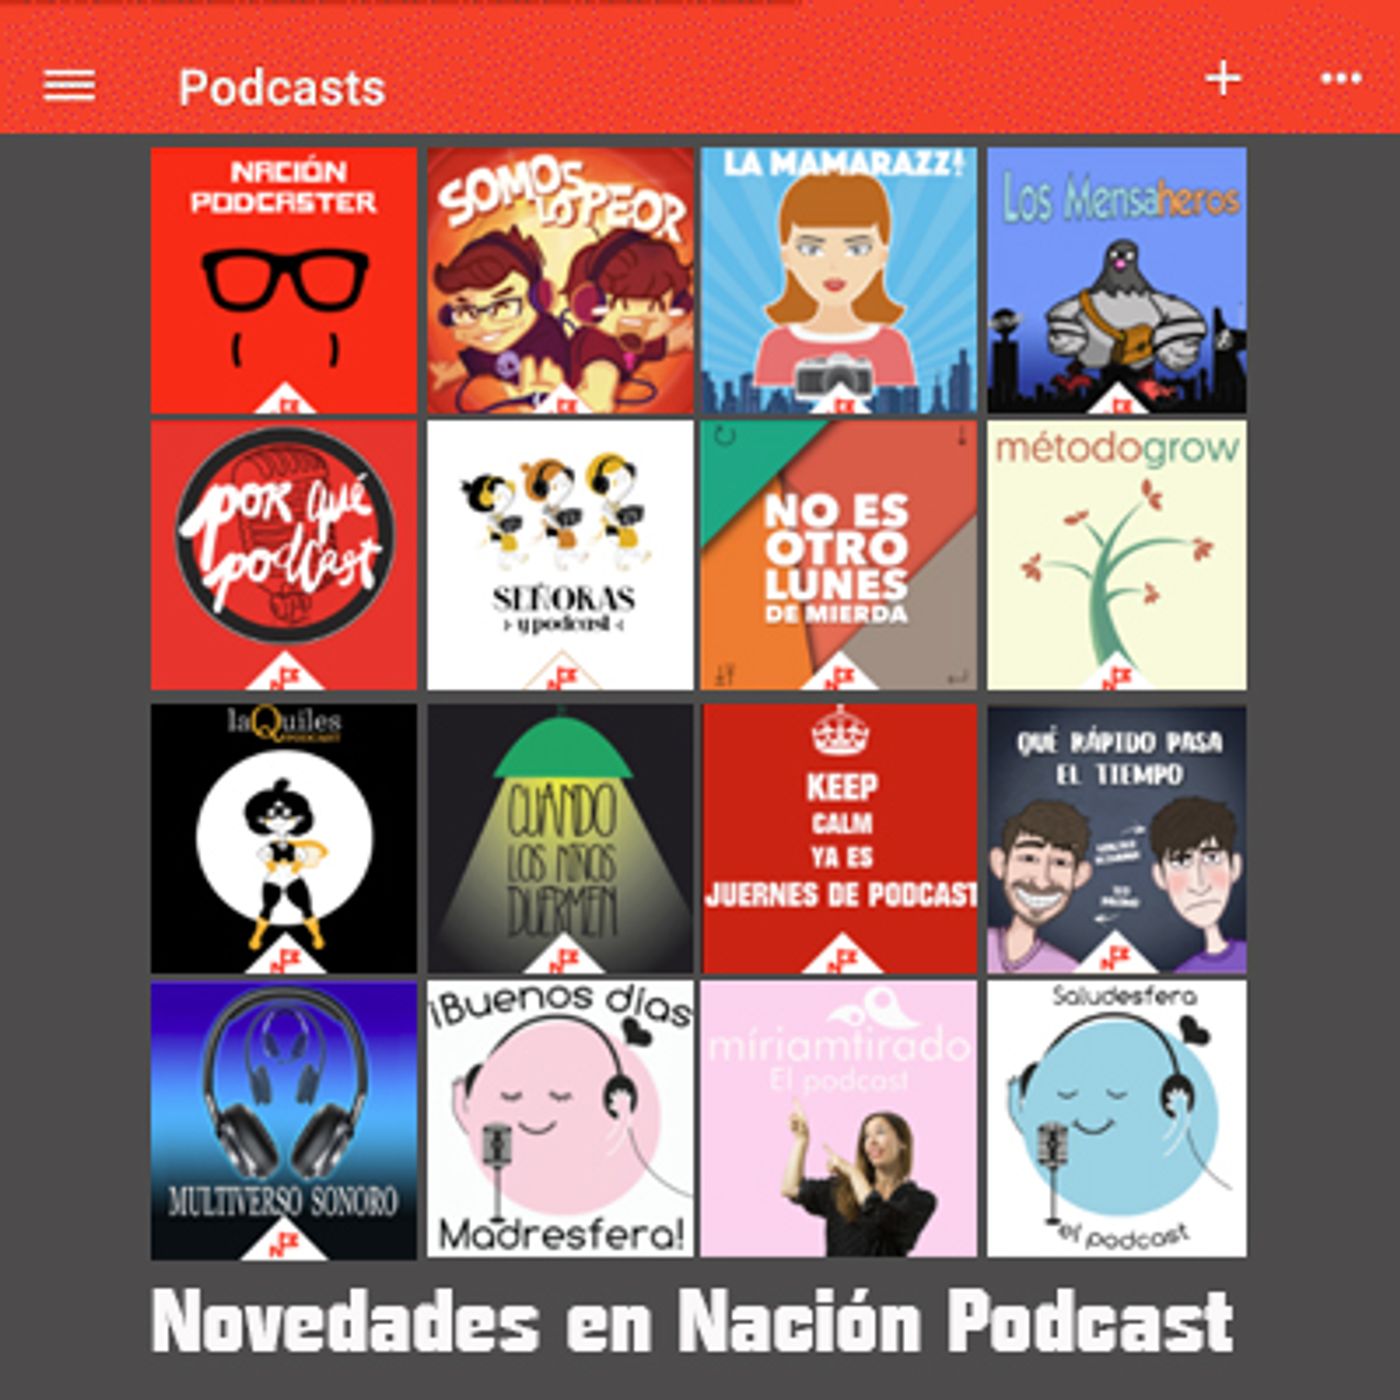 Novedades en Nación Podcast